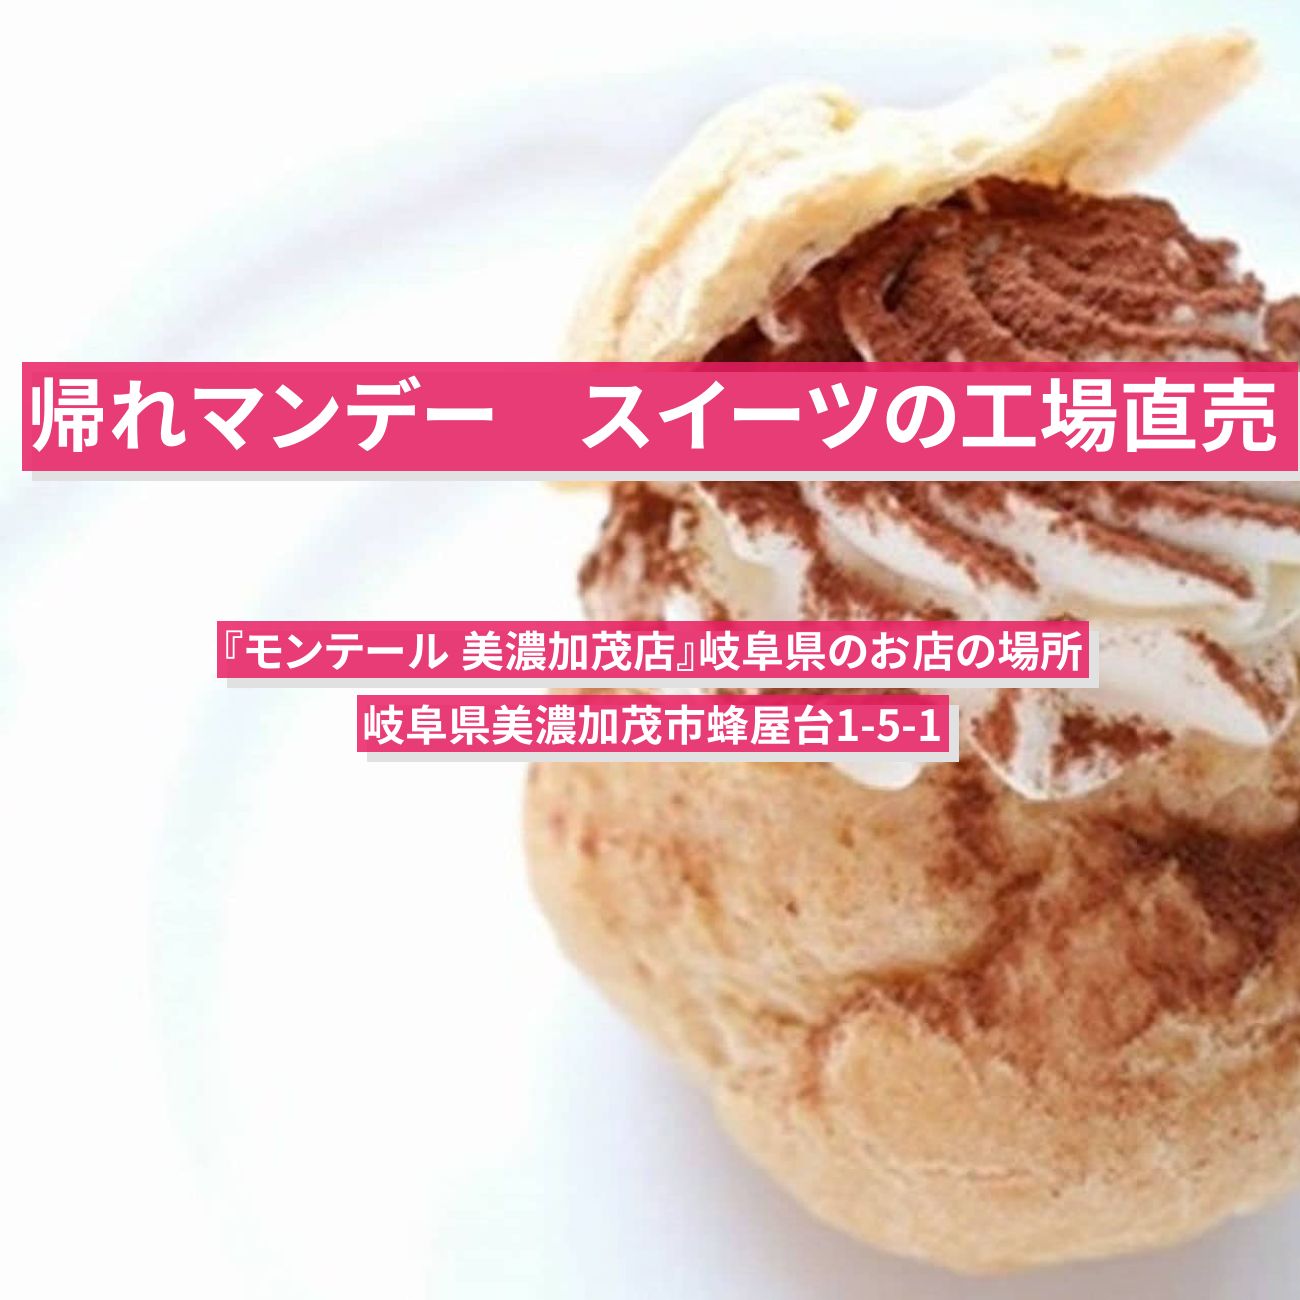 【帰れマンデー】シュークリームの工場直売『モンテール 美濃加茂店』岐阜県のお店の場所